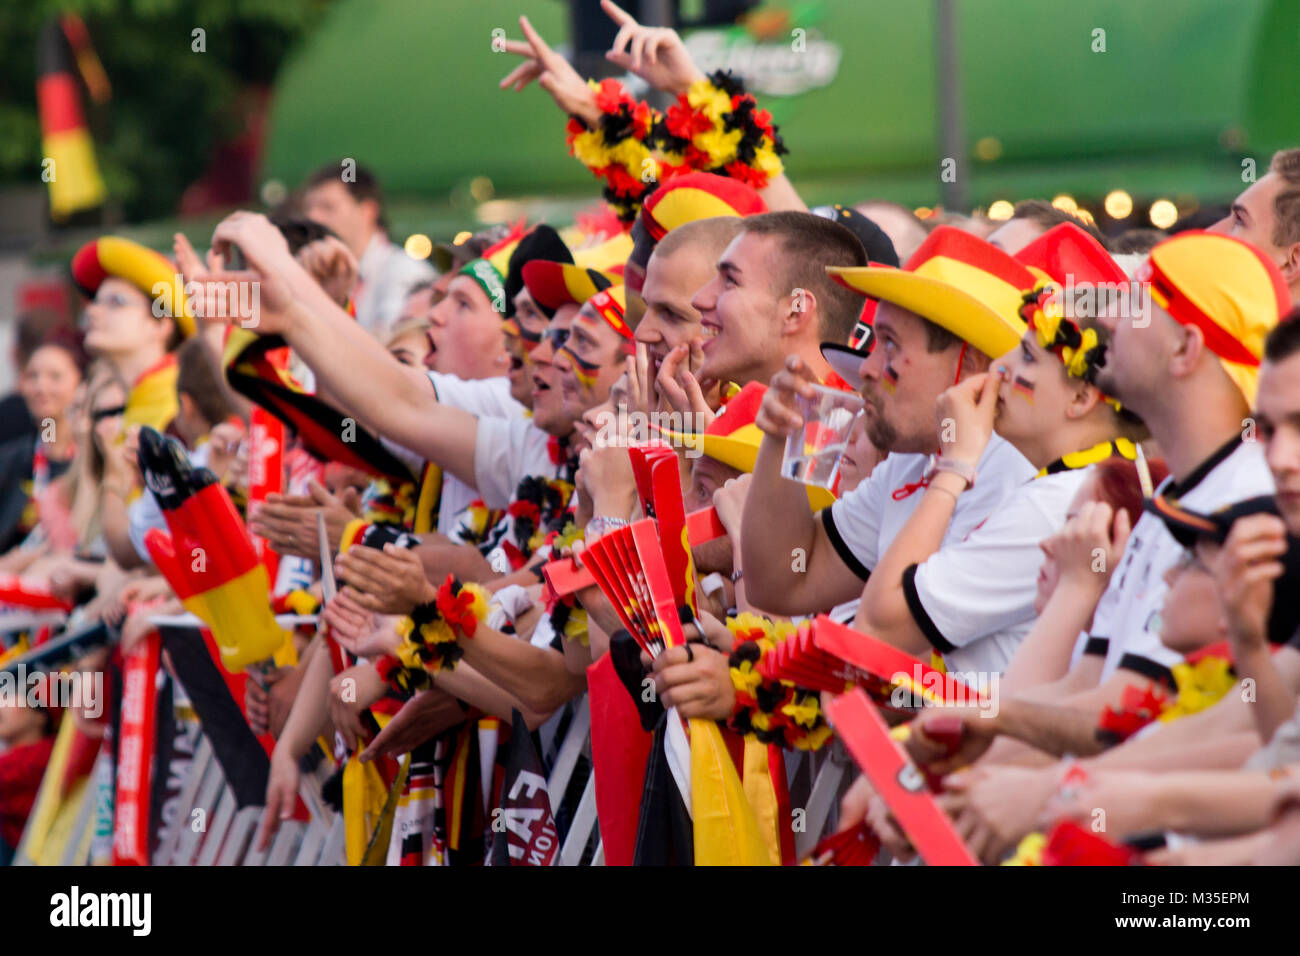 Fussbalfans fiebern mit der deutschen Manschaft auf der Fanmeile zur Europameisterschaft 2012 Deutschland gegen Griechenland am Brandenburger Tor in Berlin Stock Photo